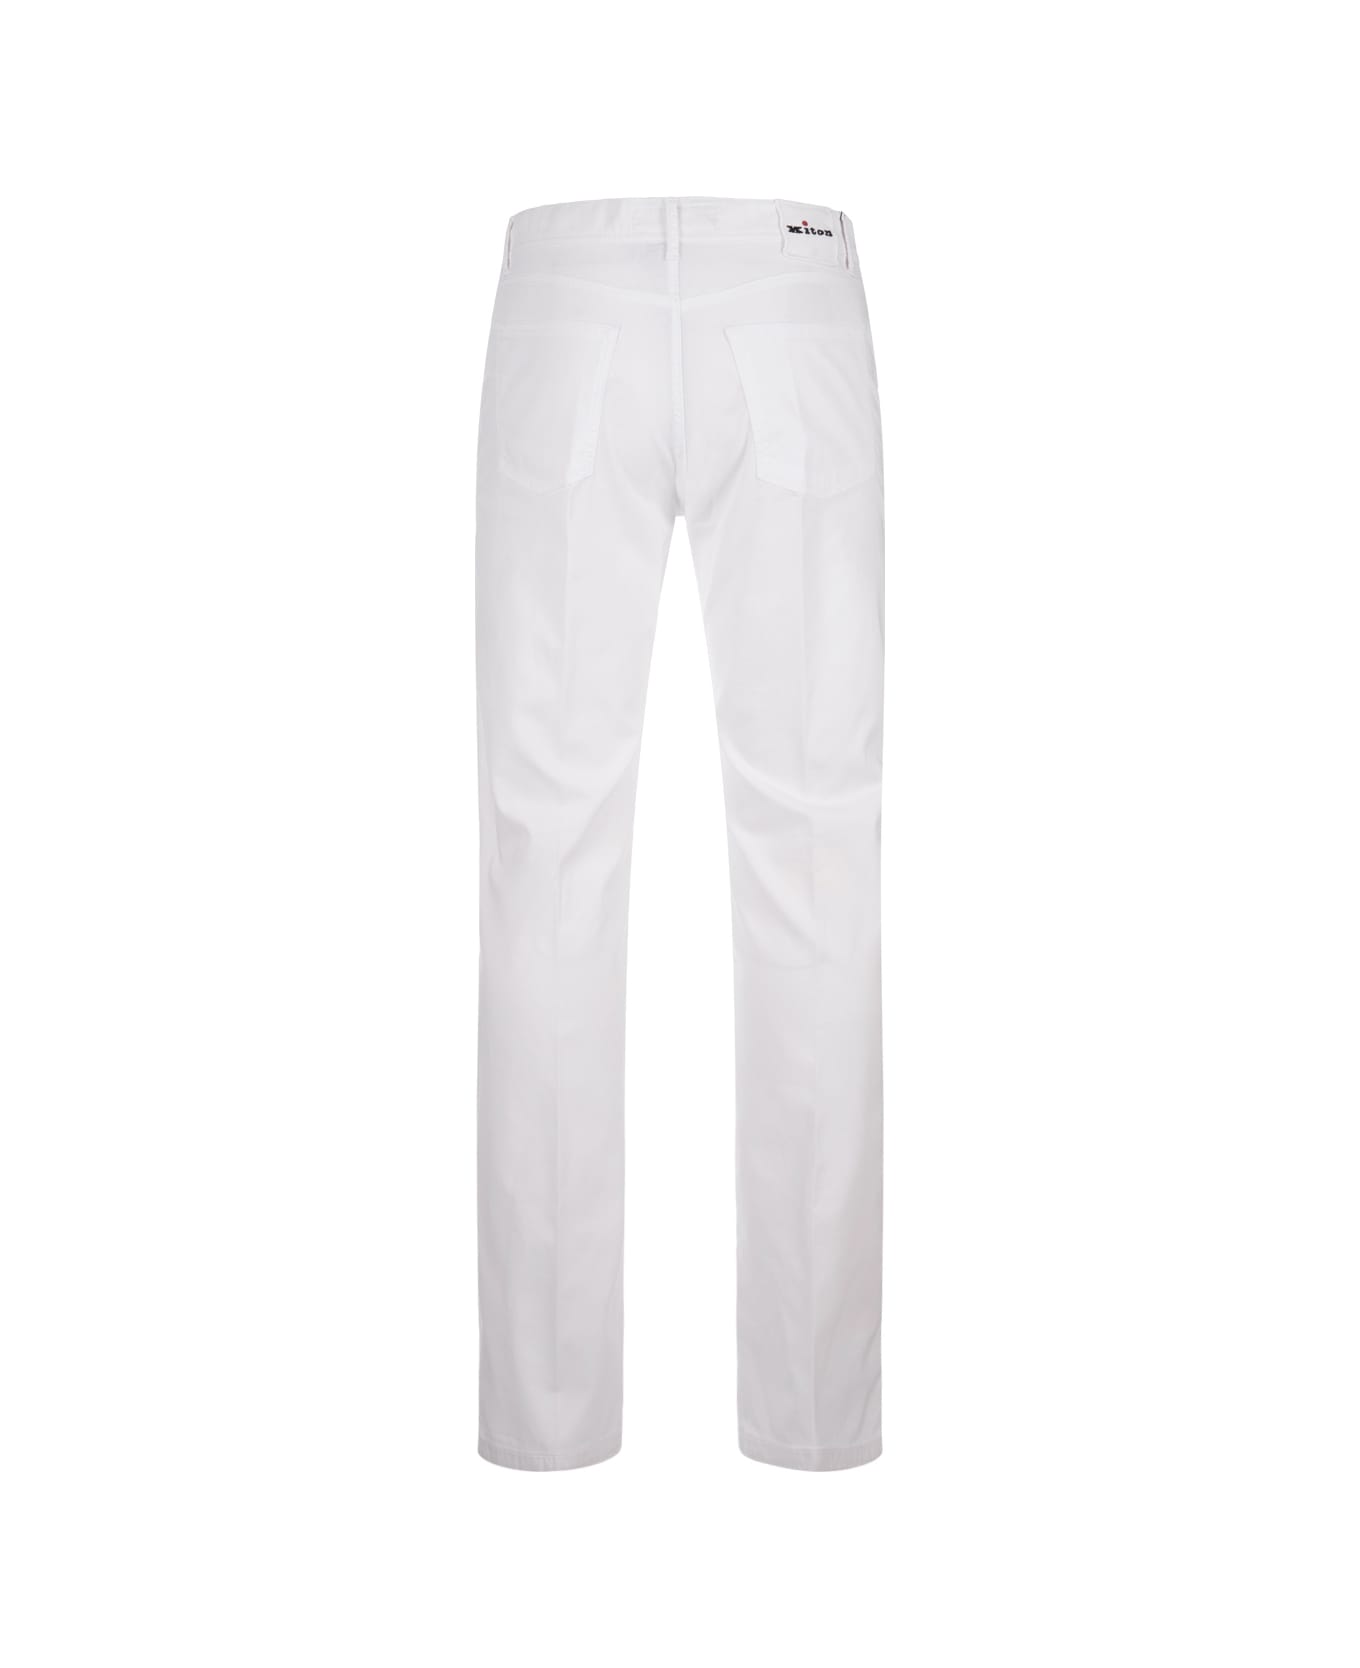 Kiton White 5 Pocket Straight Leg Trousers - White ボトムス